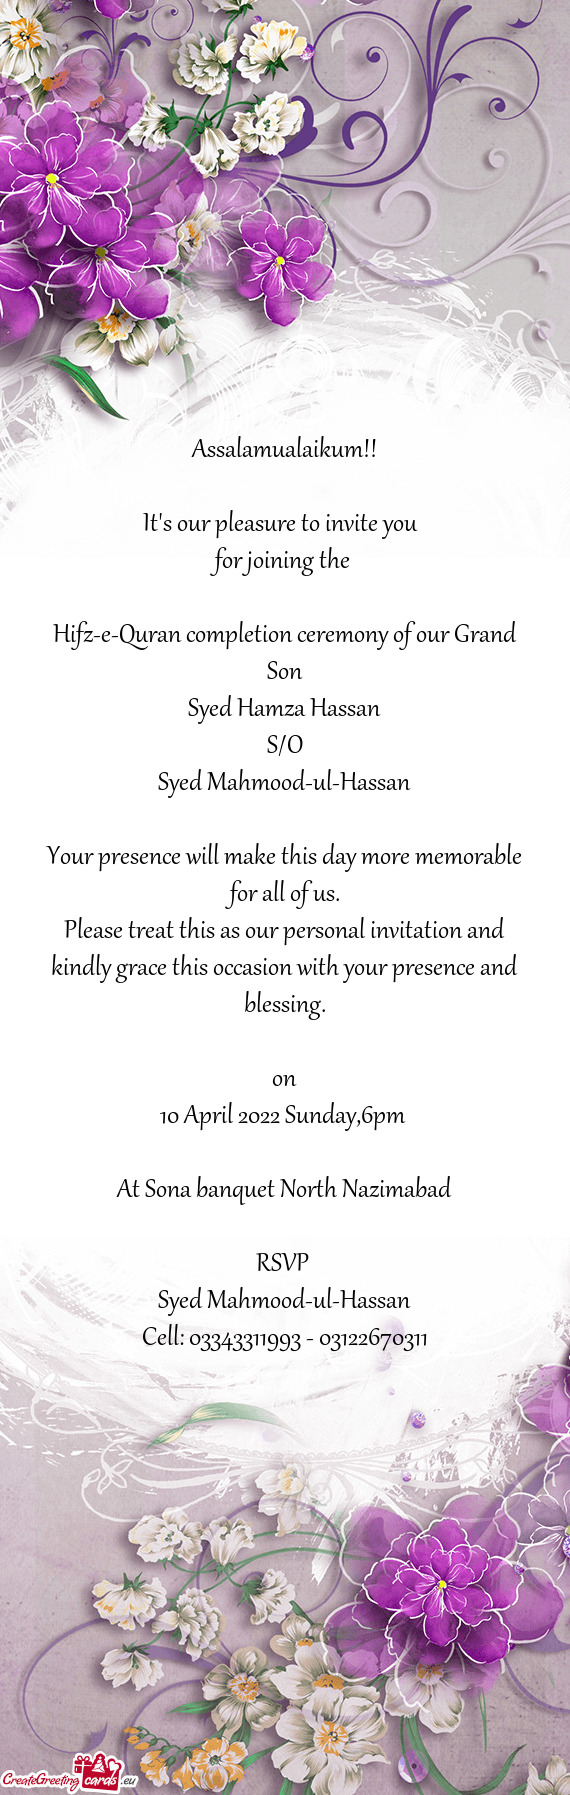 Syed Hamza Hassan